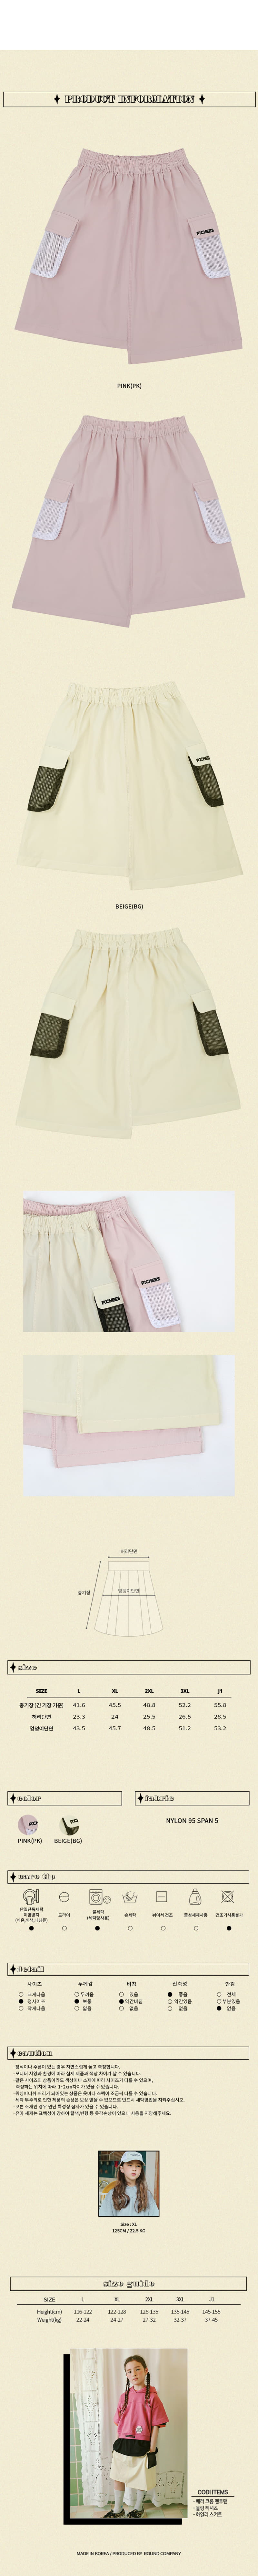 Peach-Cream - Korean Junior Fashion - #discoveringself - Hily Skirt - 3